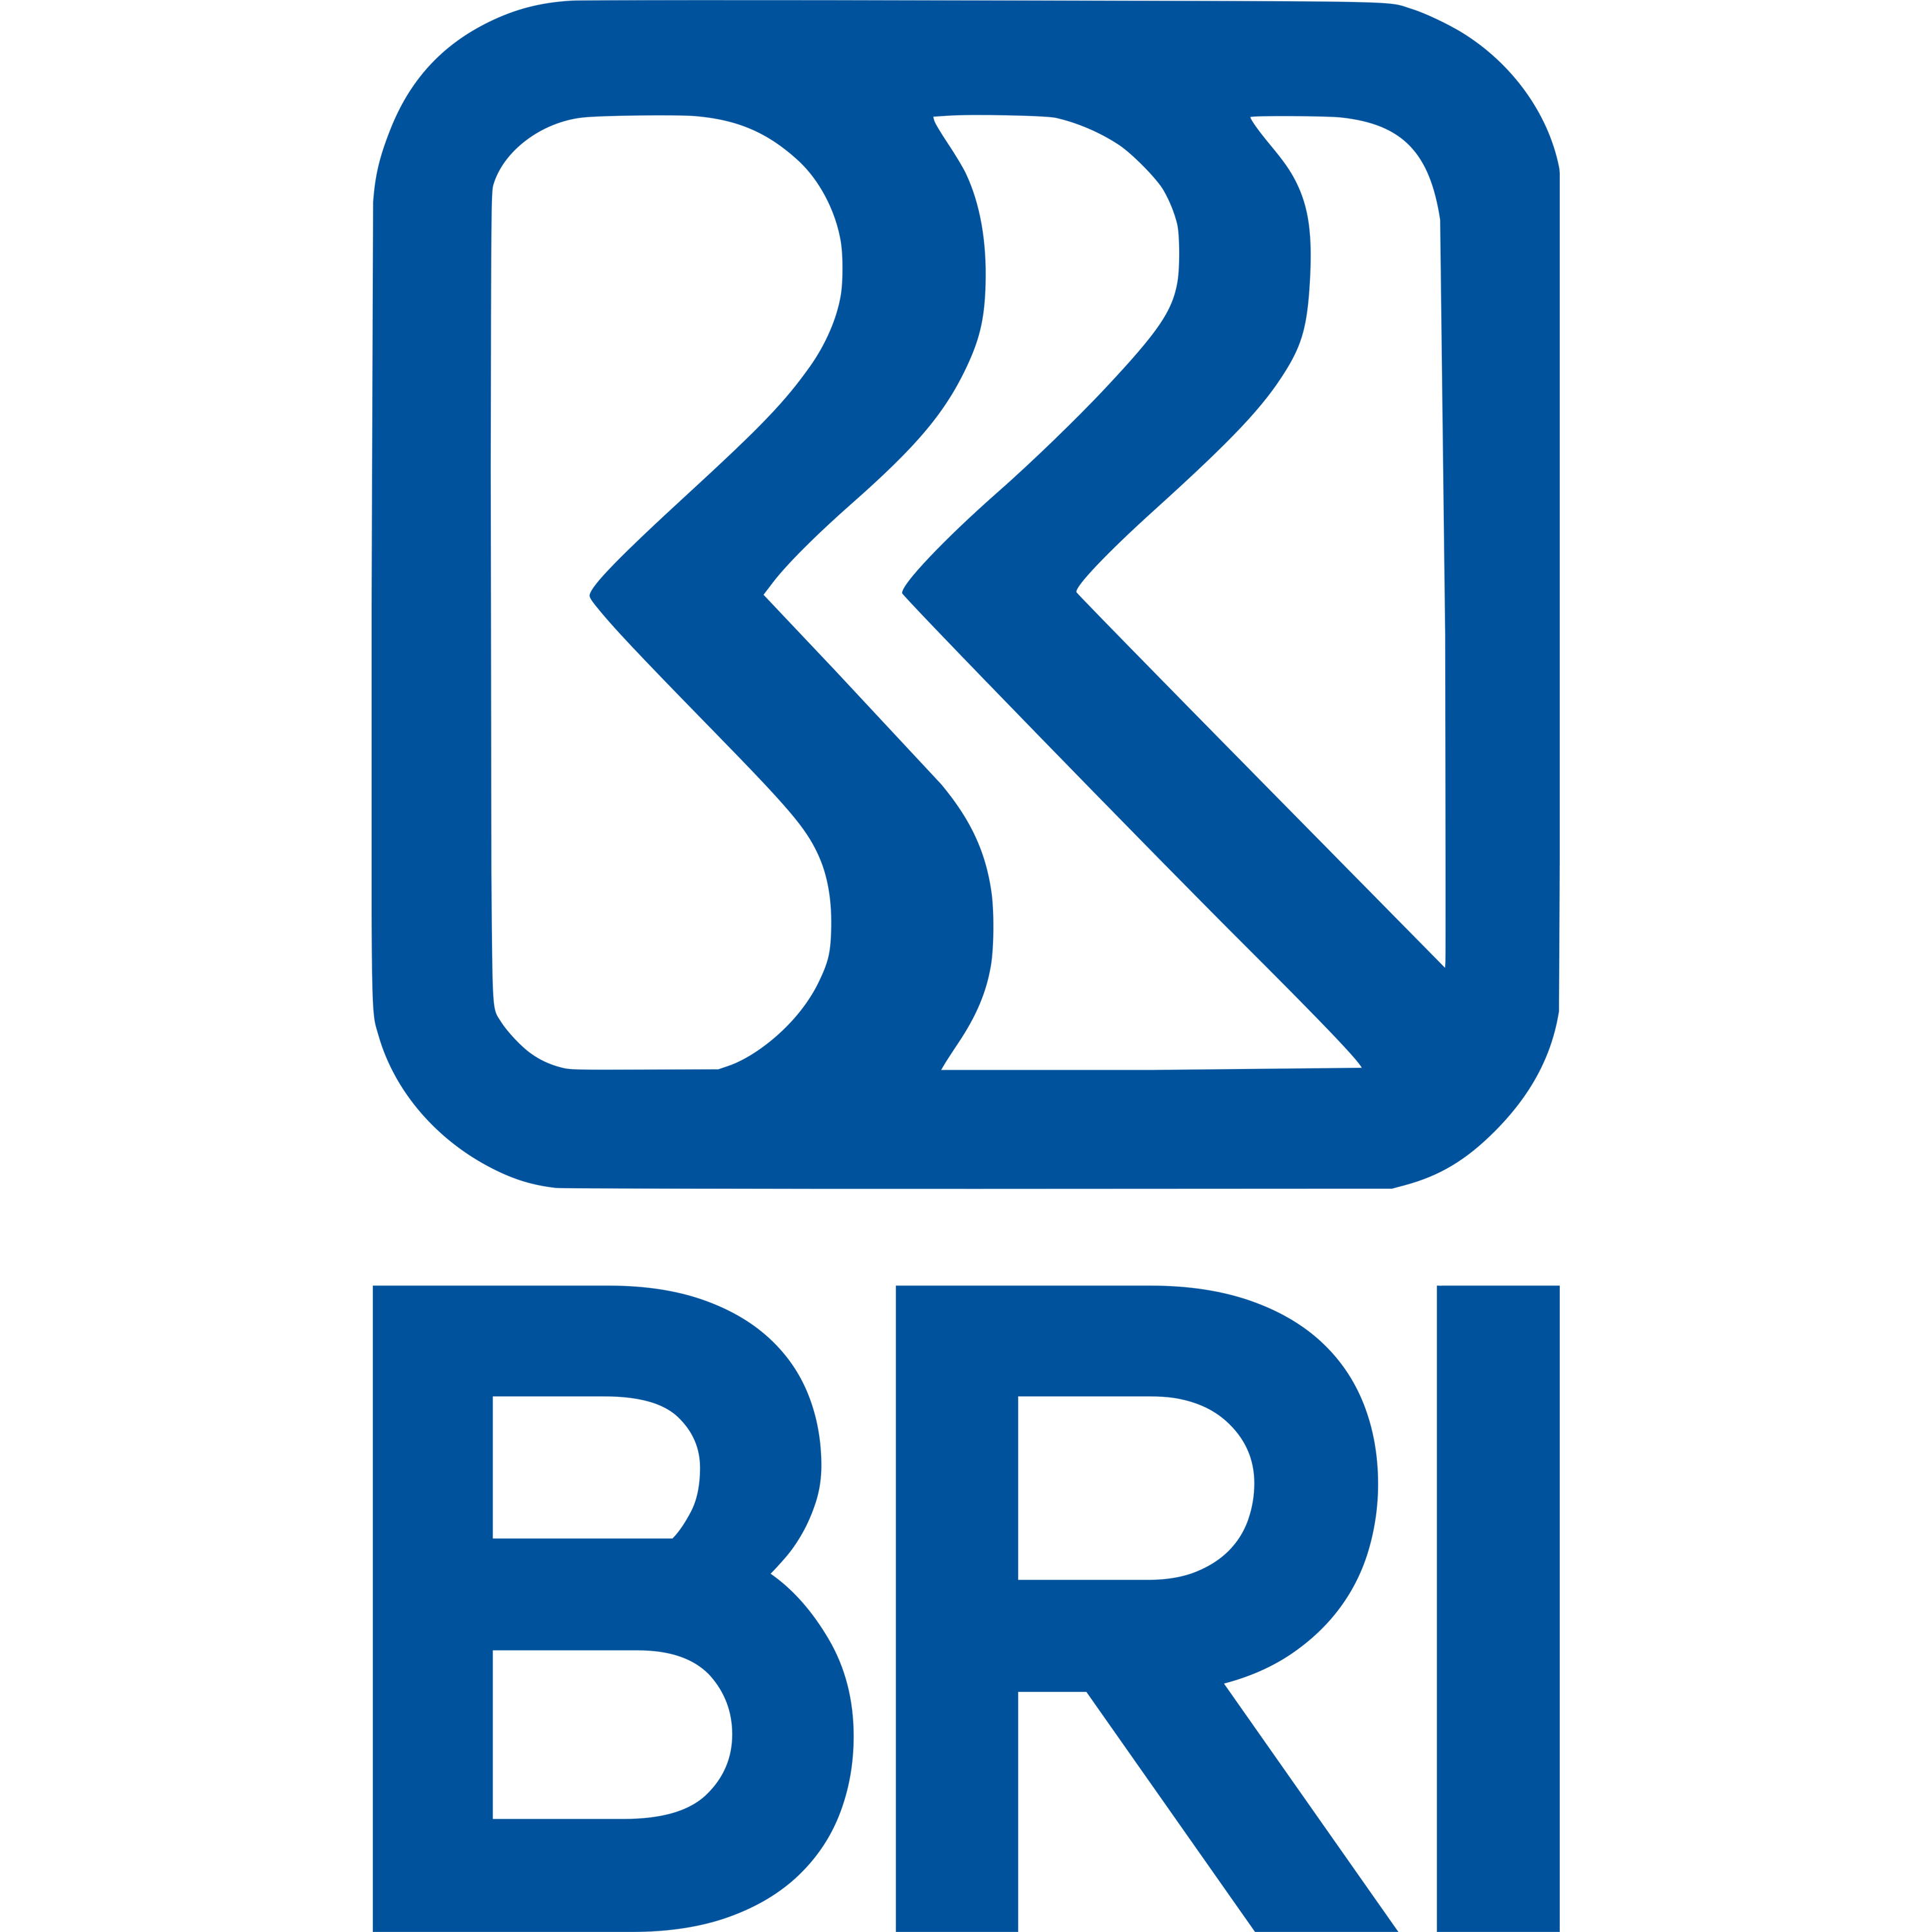 BRI 2020 Logo Transparent Image